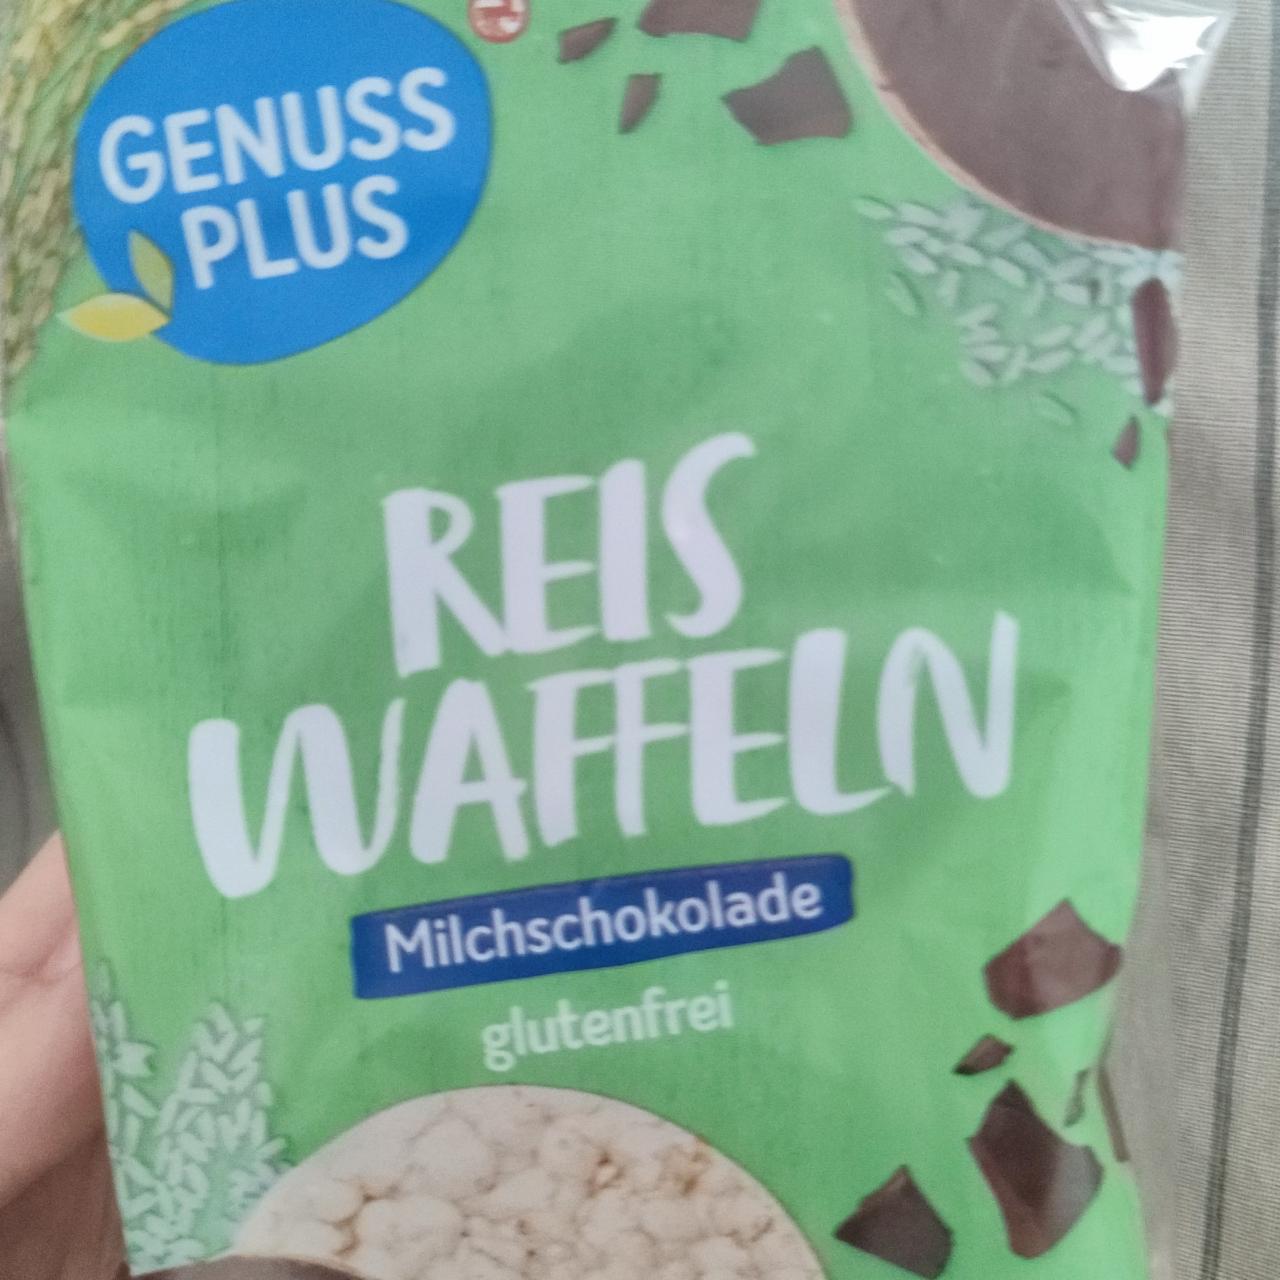 Zdjęcia - Reis waffeln Milchschokolade Rossmann